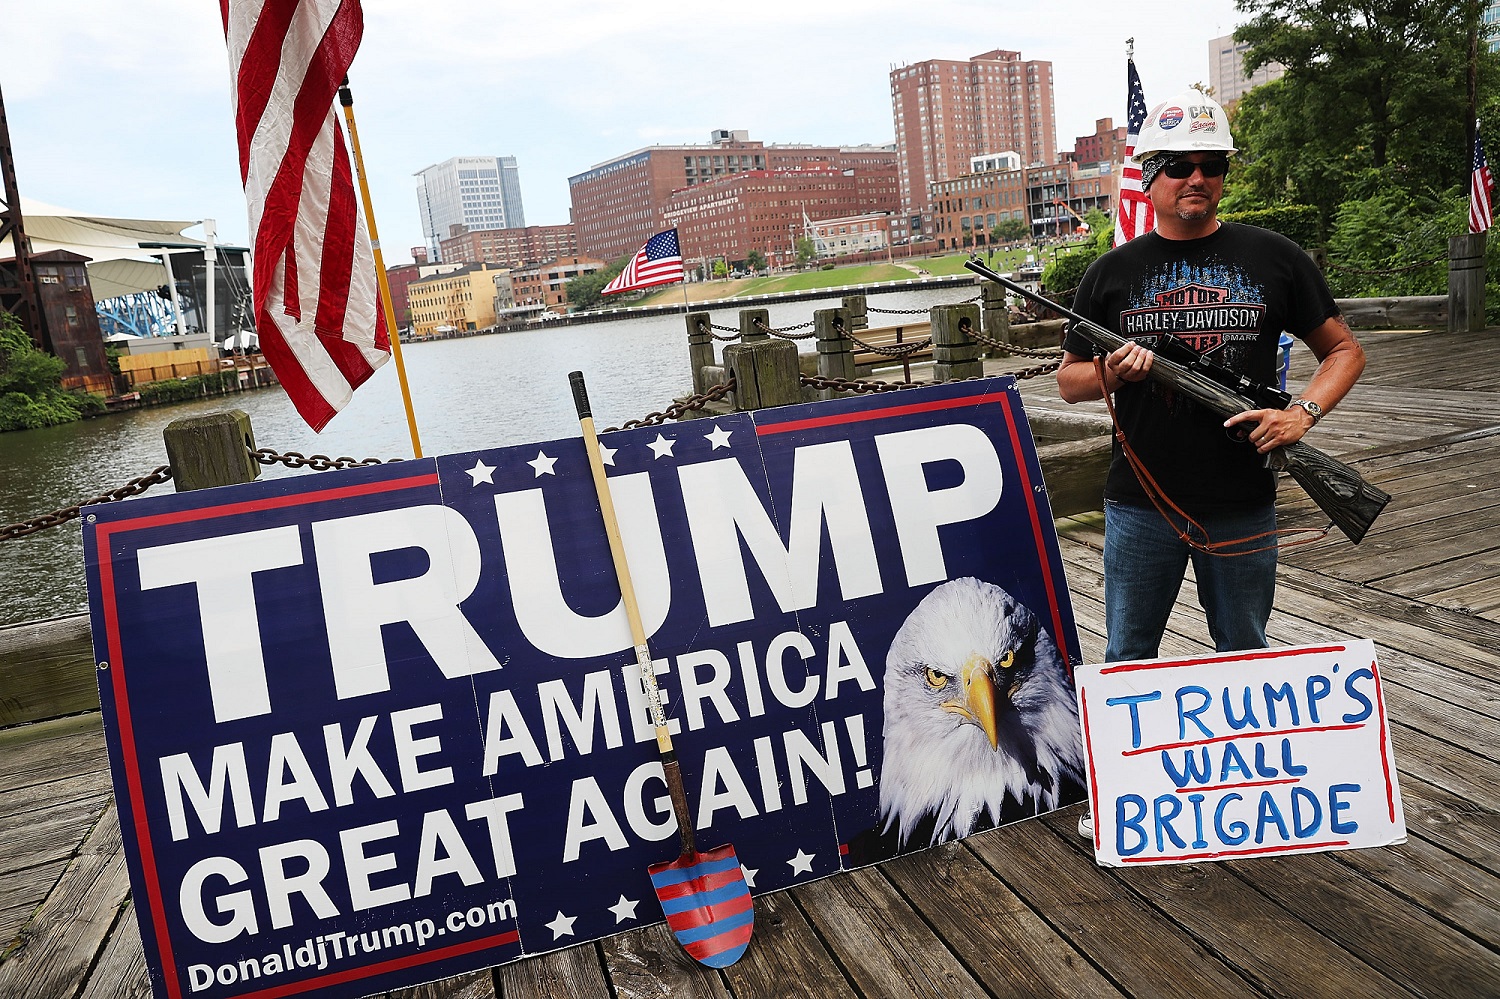 Trump wall brigade guy Getty Images/Spencer Platt 